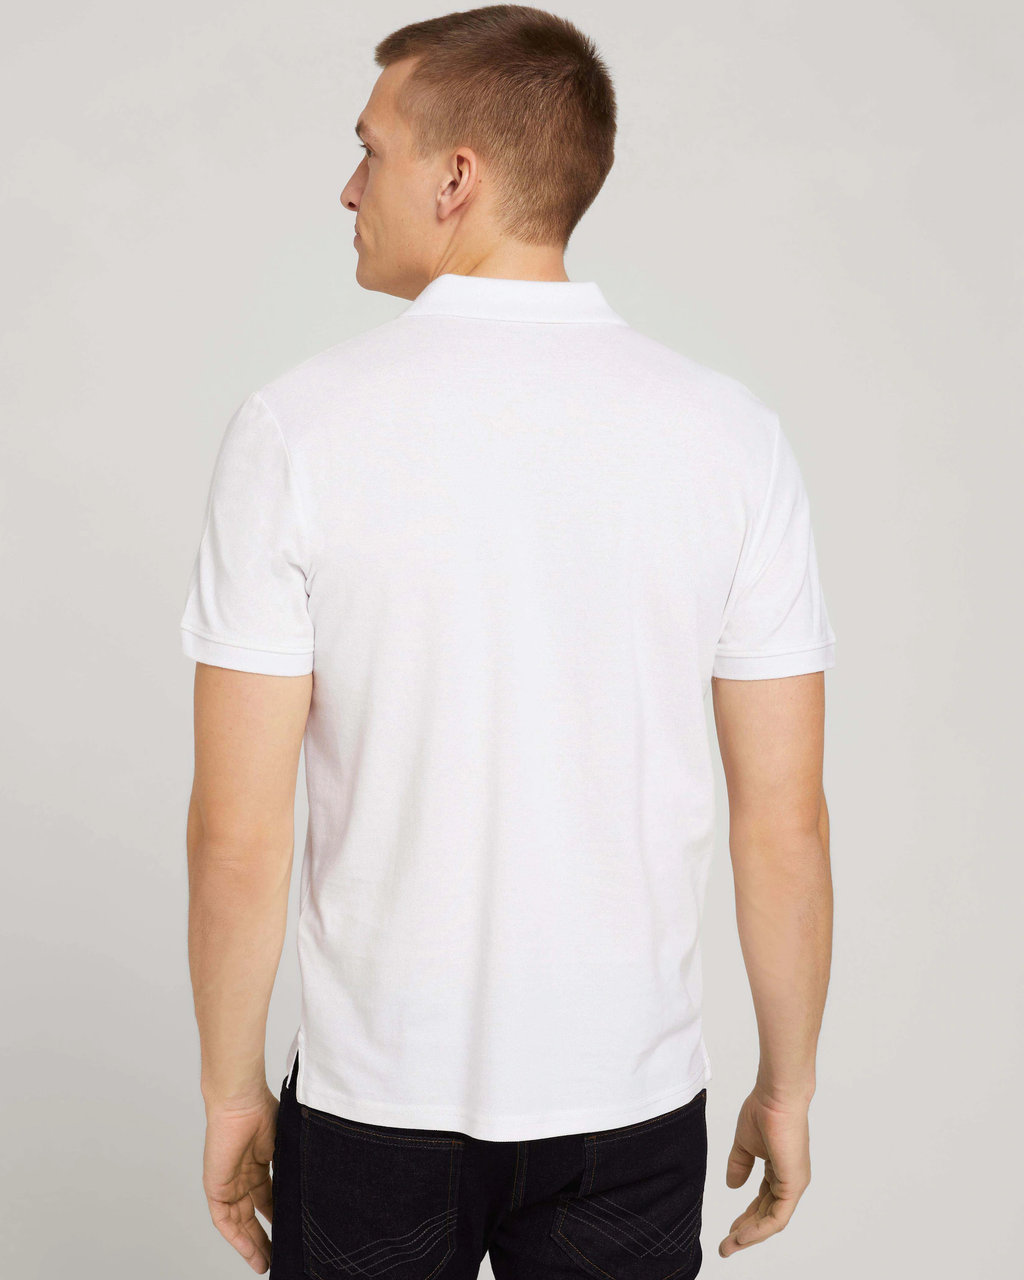 handsandhead polo White Basic | Tom Tailor shirt